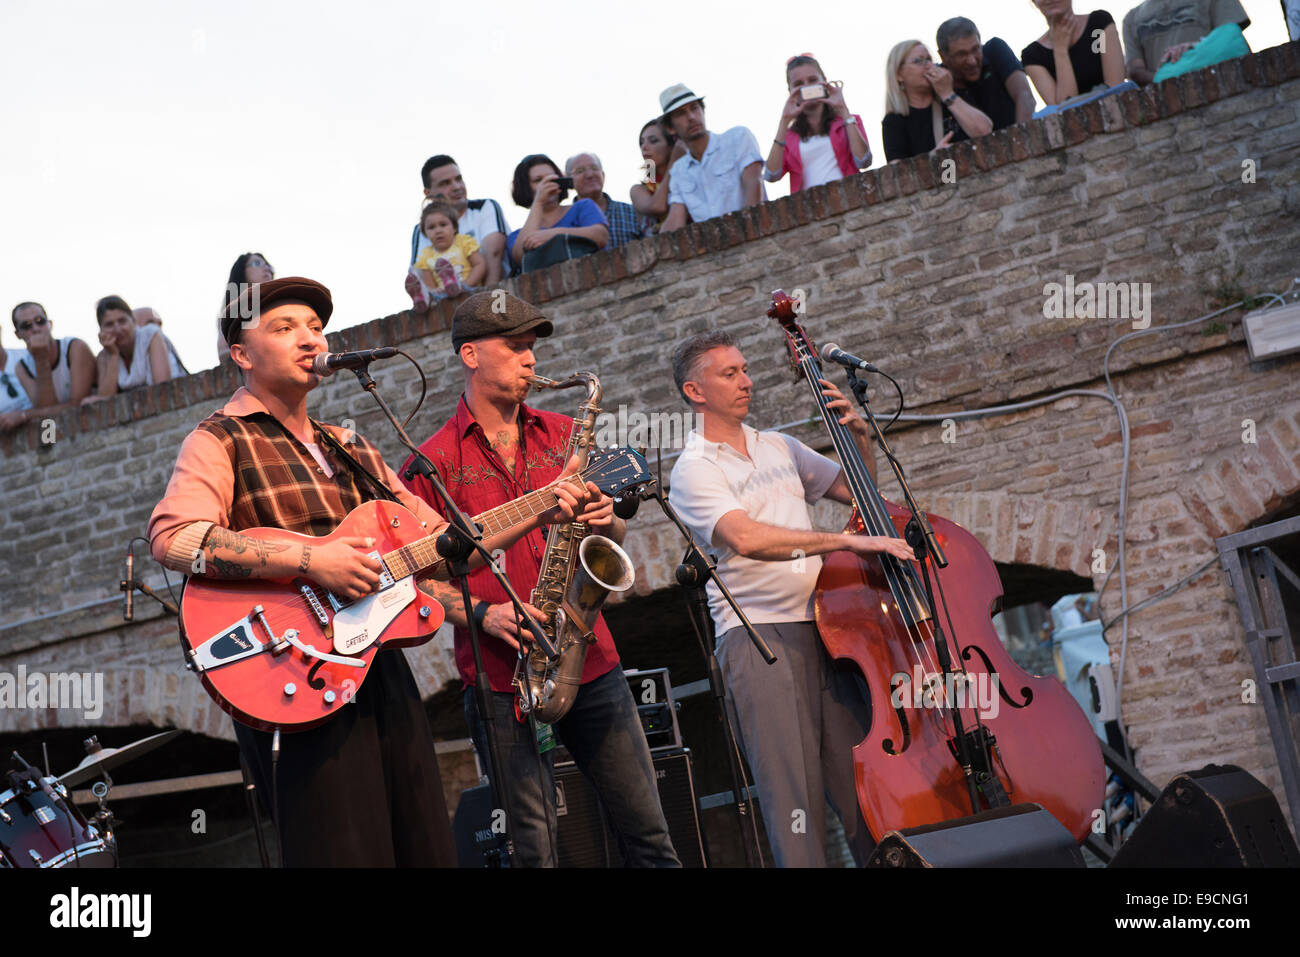 Rusty Pinto, E Guitar, Foro Amnonario, Rocca Roveresca, Summer Jamboree 2014, Senigallia, Italy Stock Photo